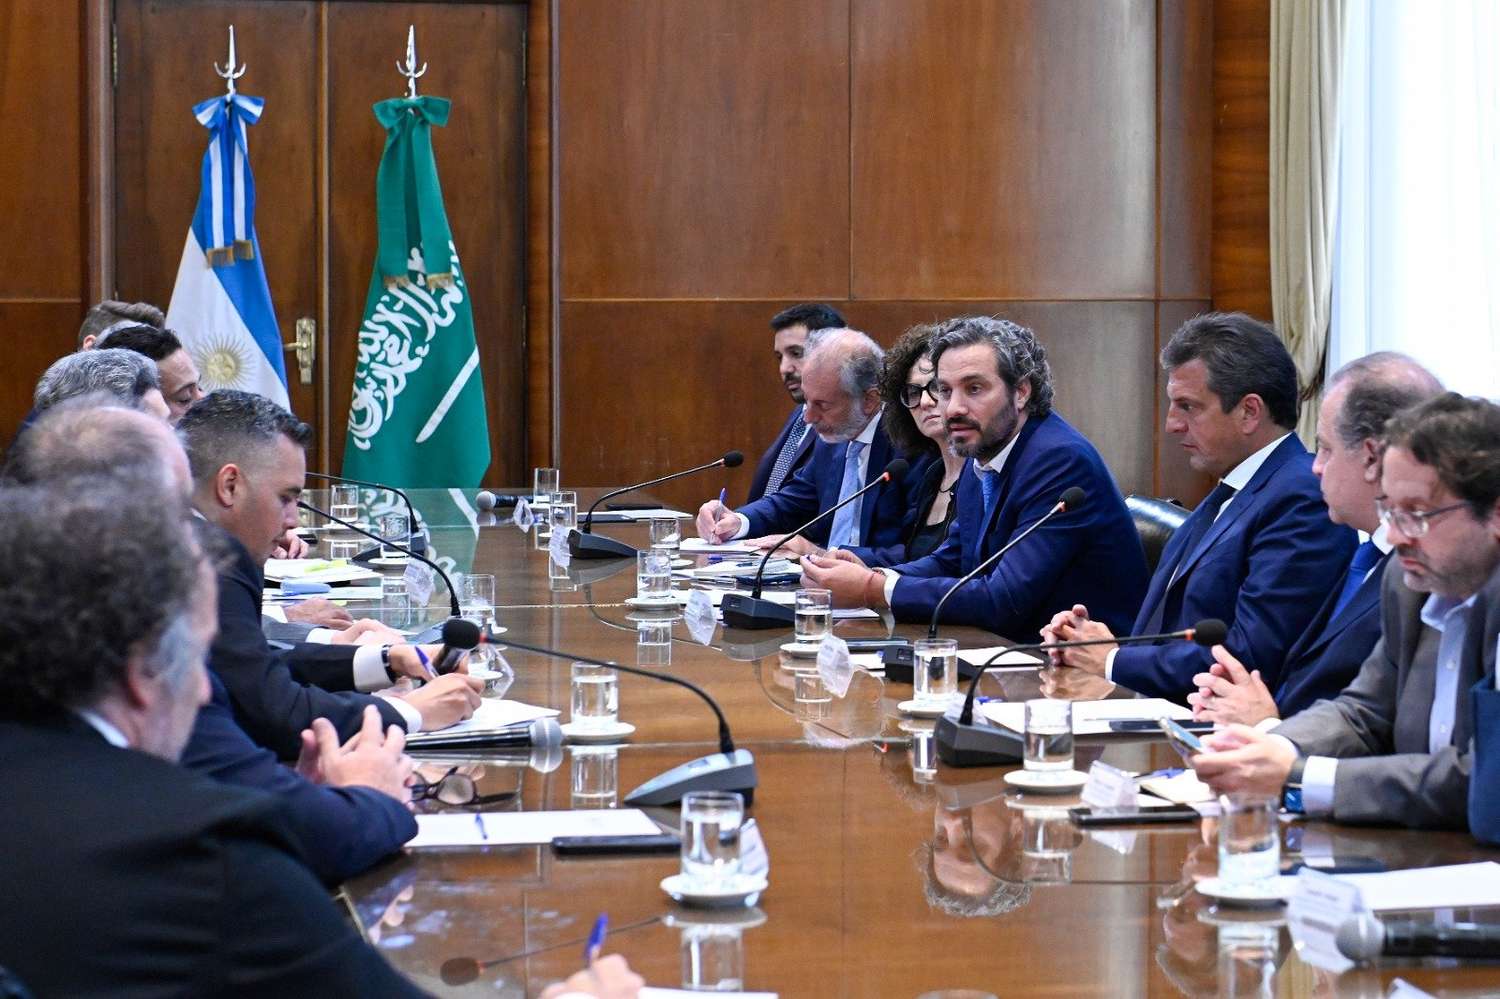 Arabia Saudita confirmó su interés por invertir 500 millones de dólares en la Argentina